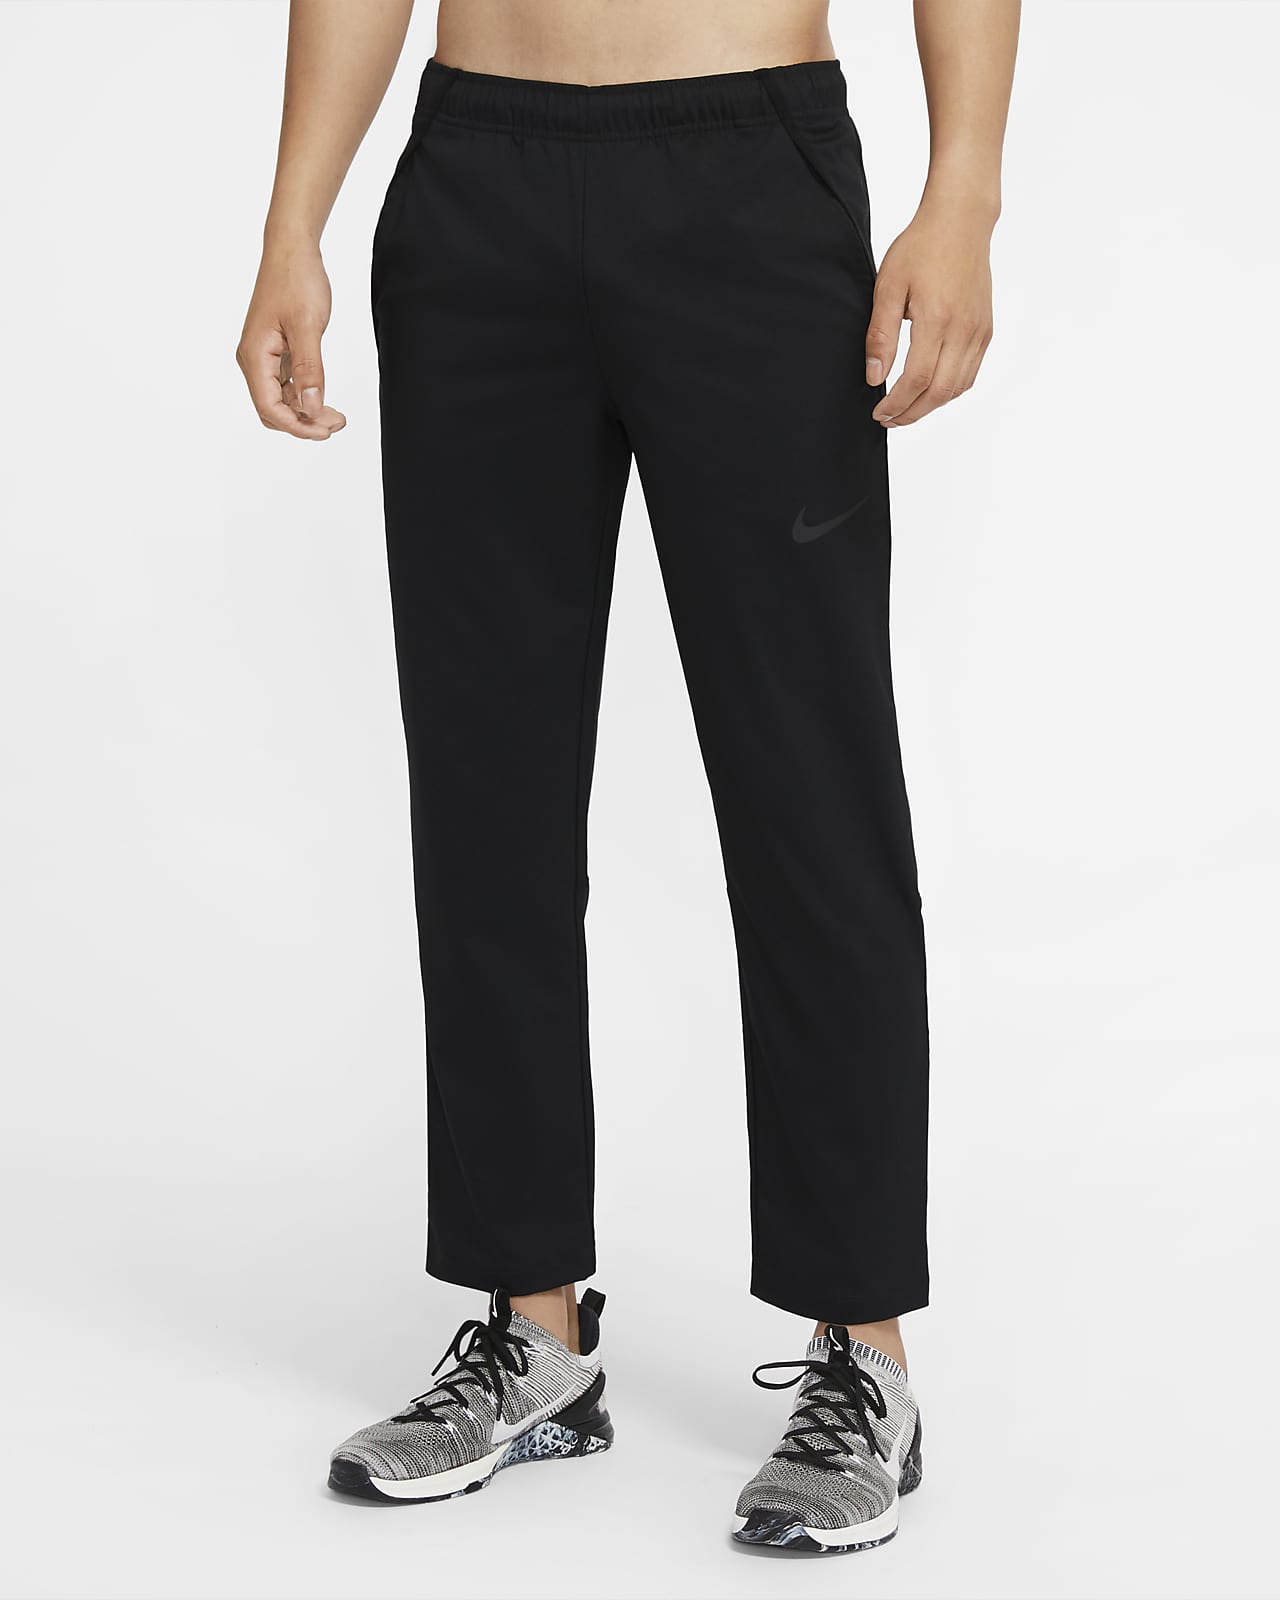 Nike Dri-FIT Men's Woven Training Trousers